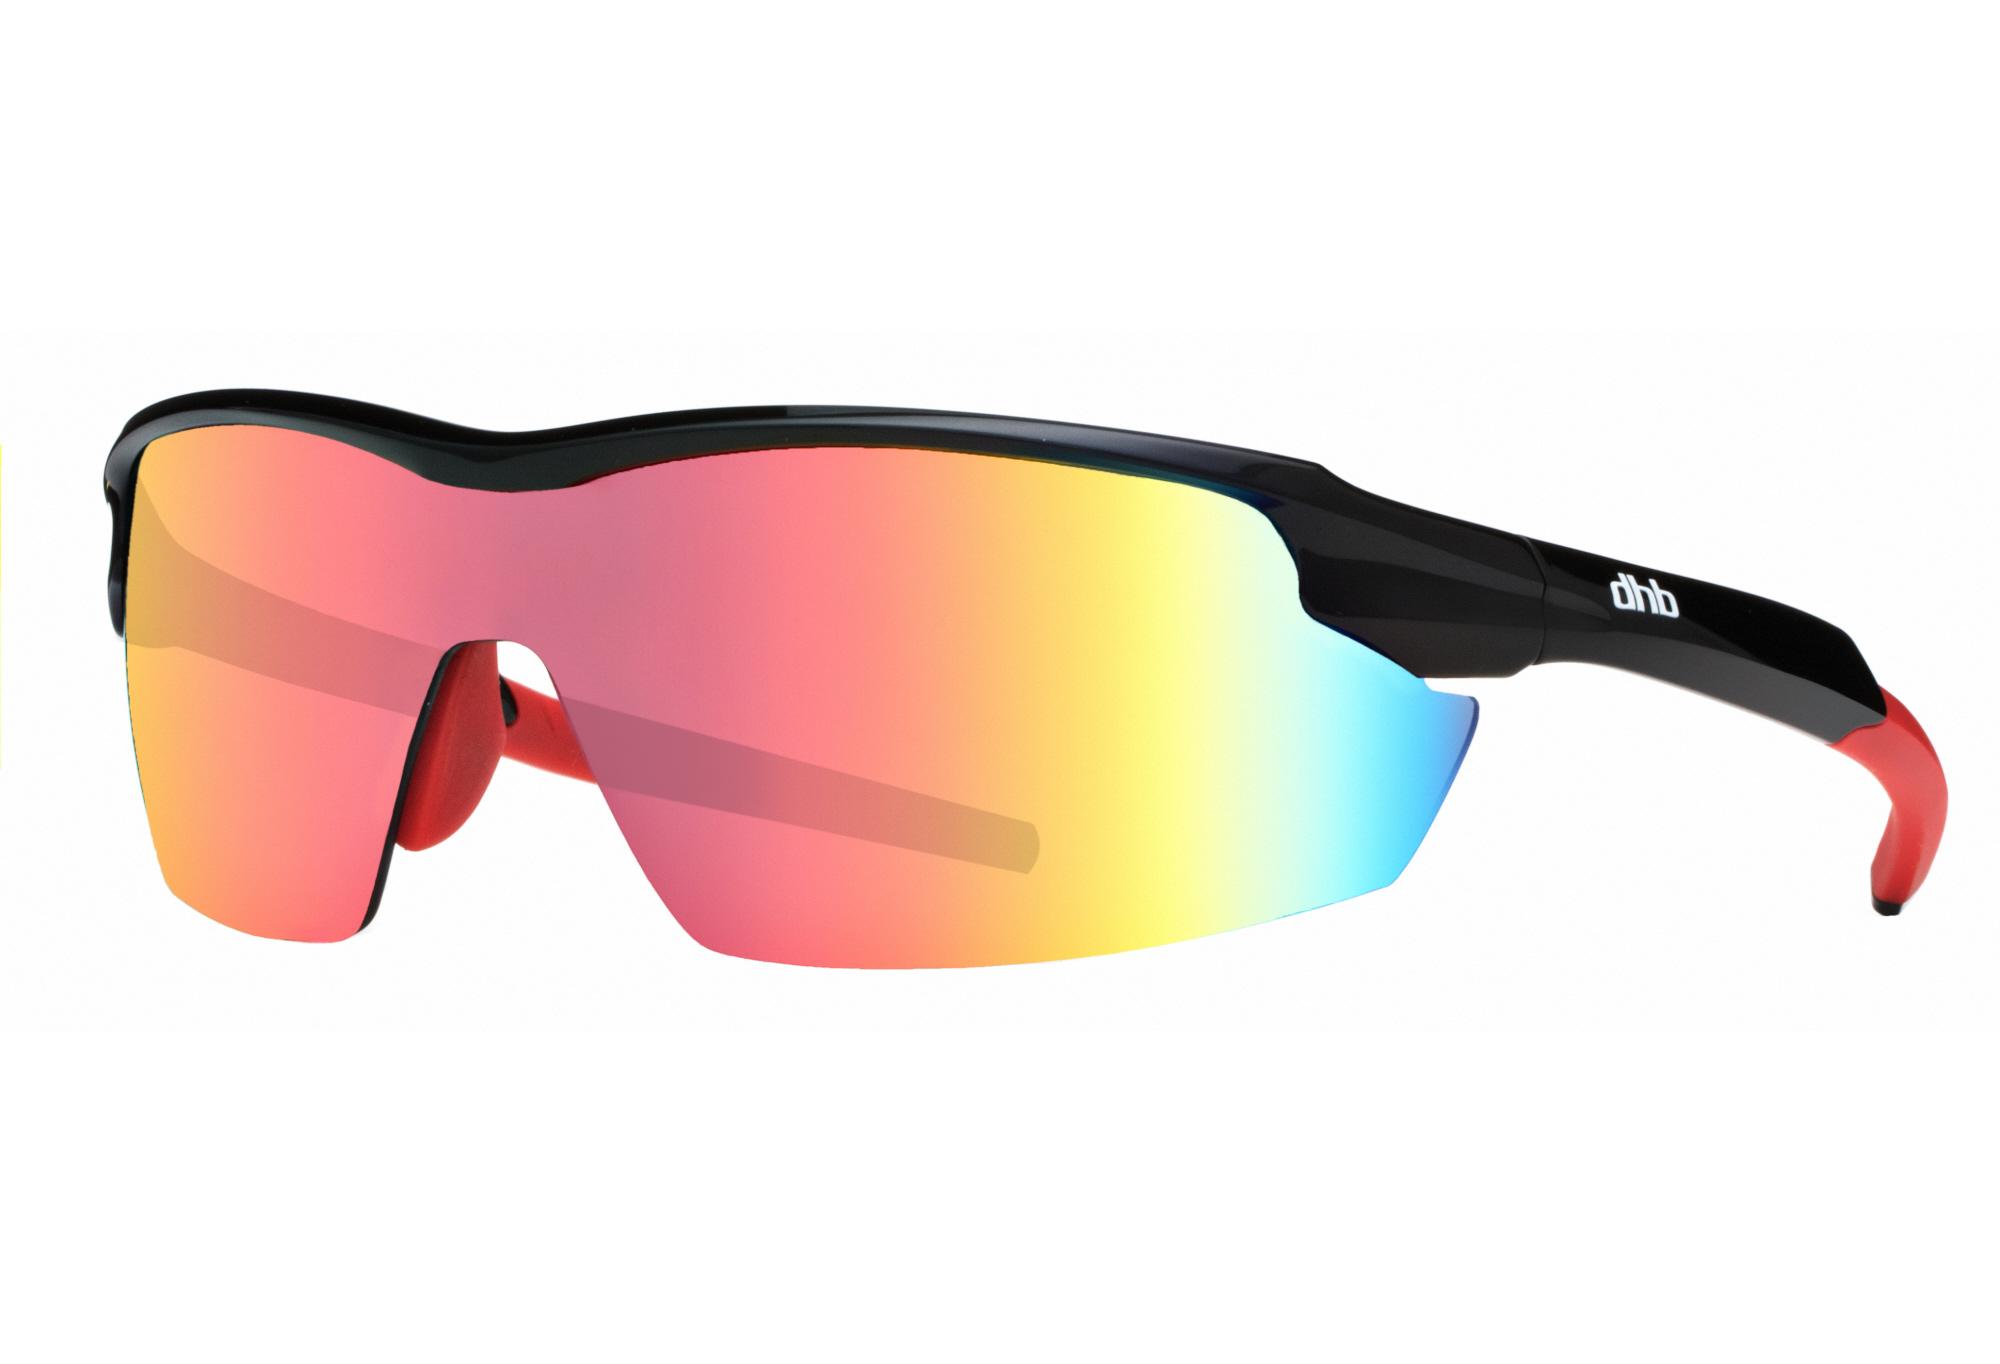 Dhb Aeron Triple Lens Sunglasses - Black/red